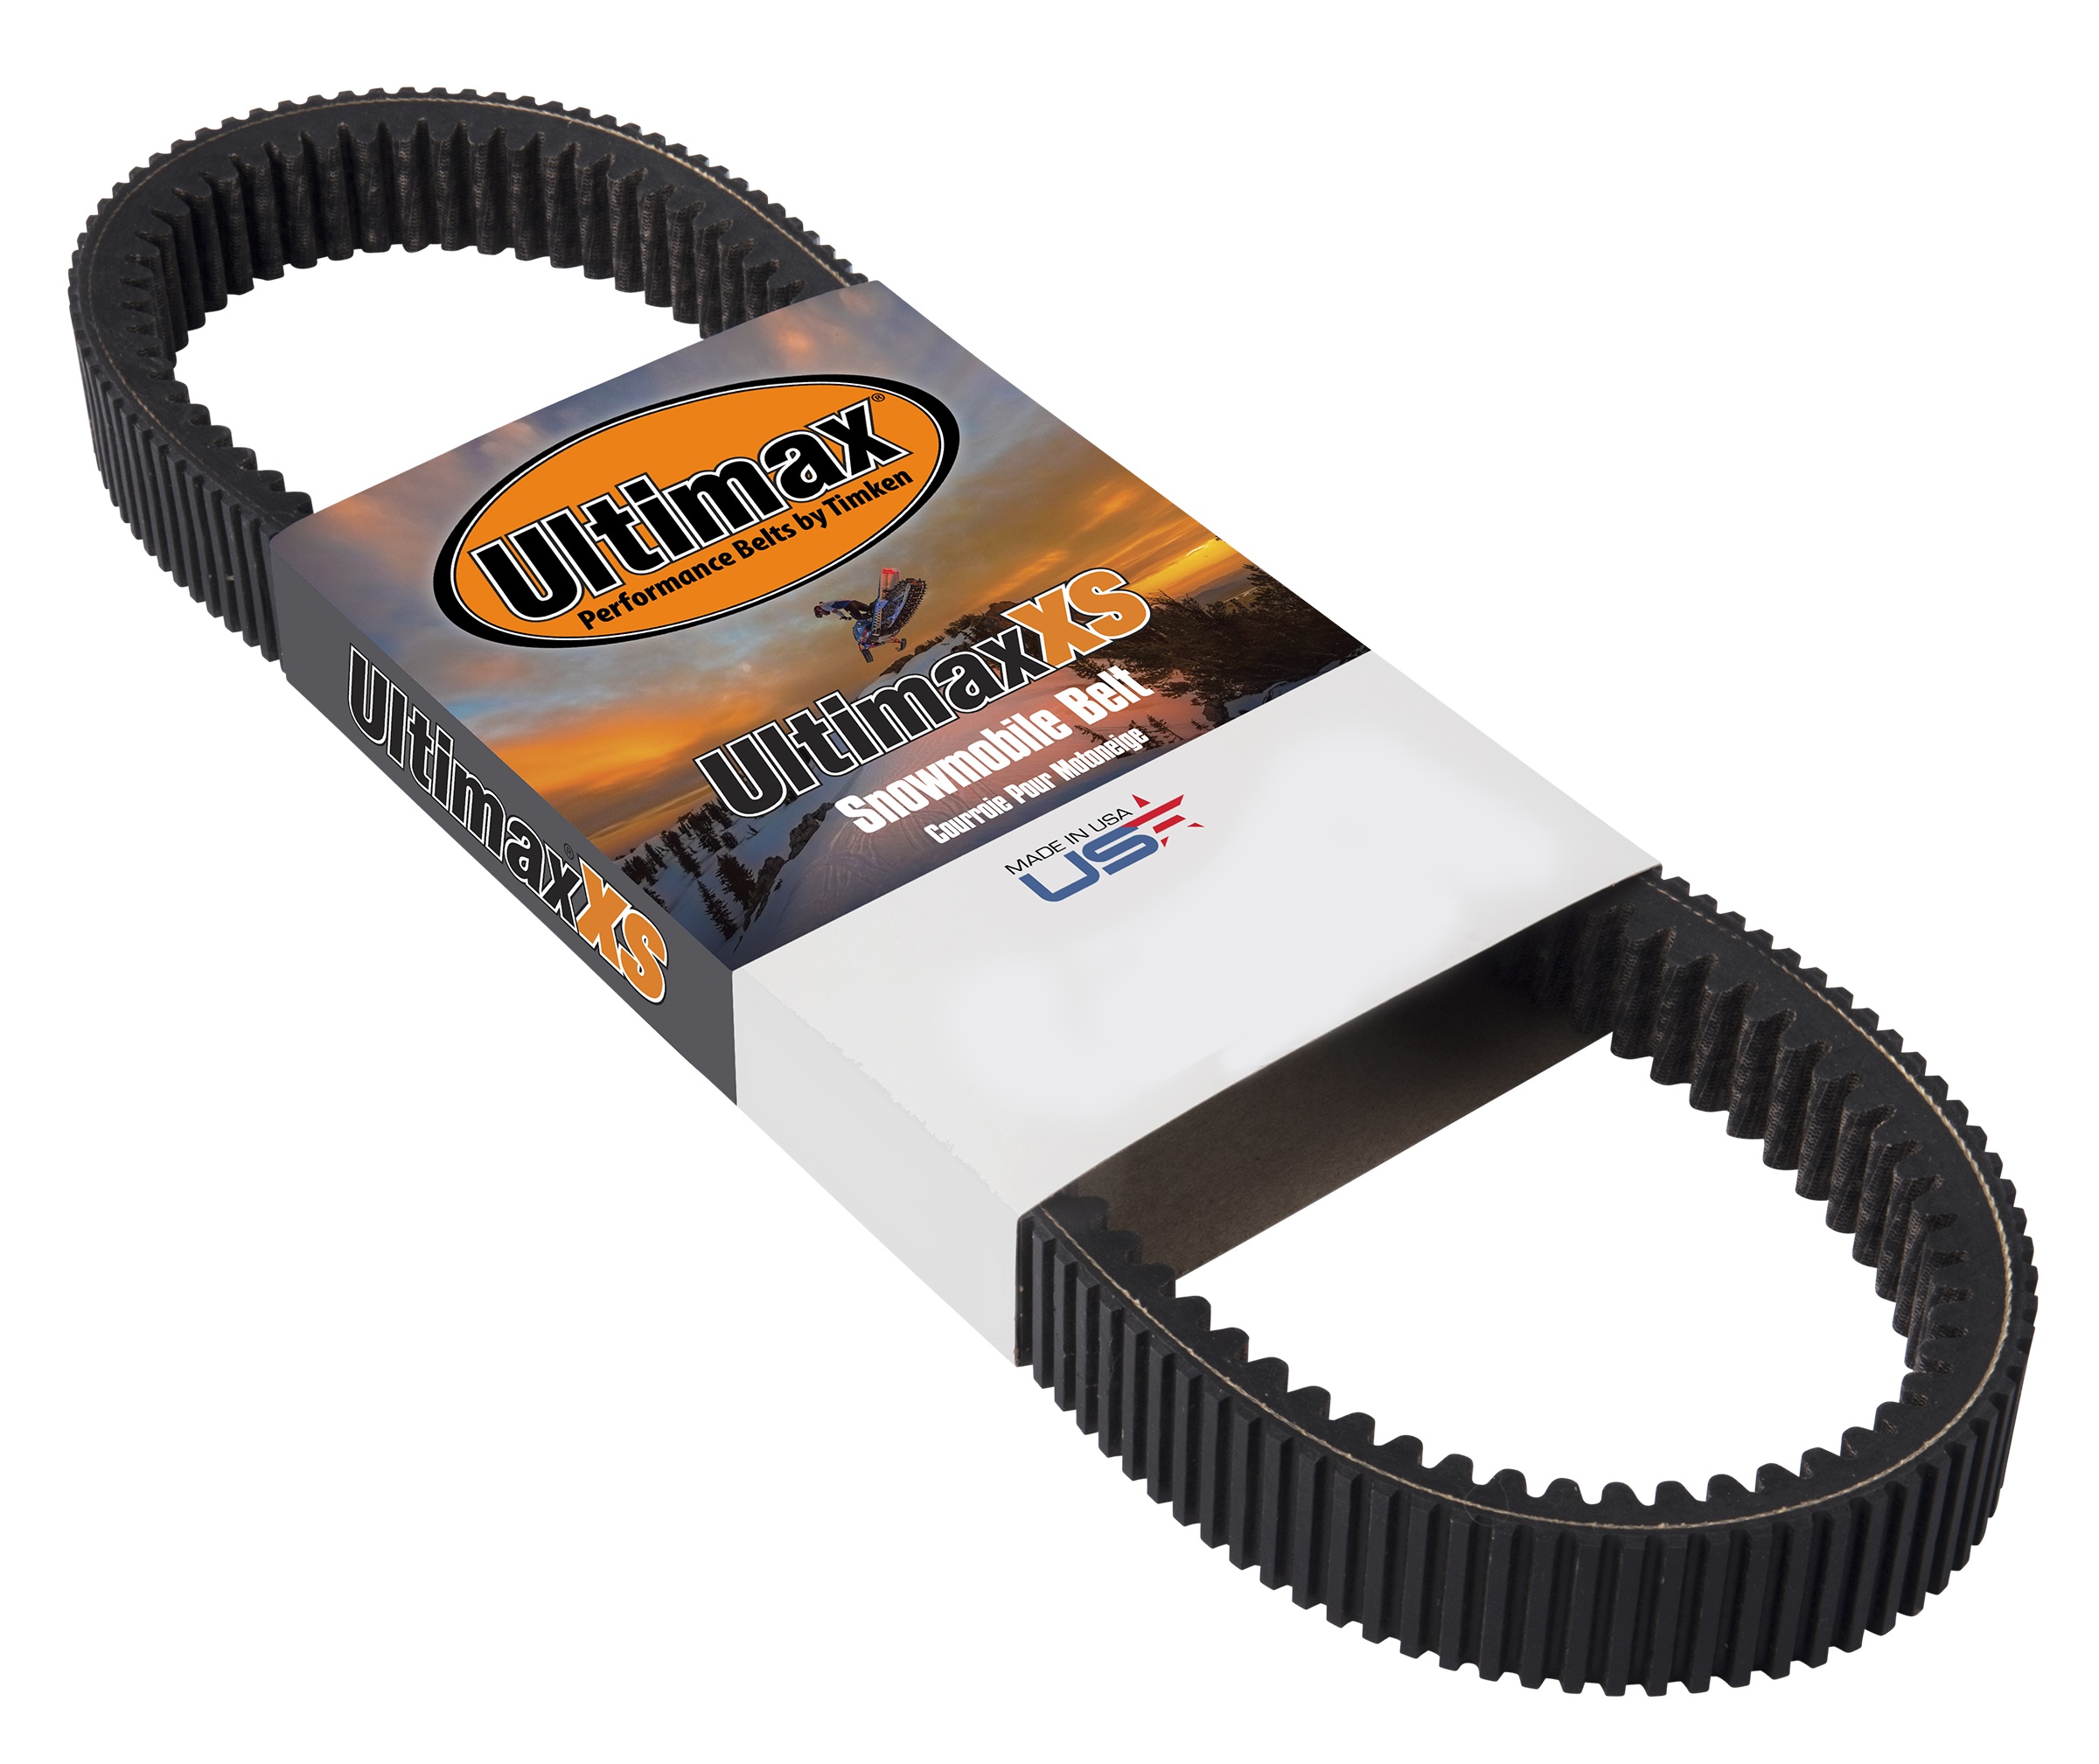 Ultimax XS belt in sleeve